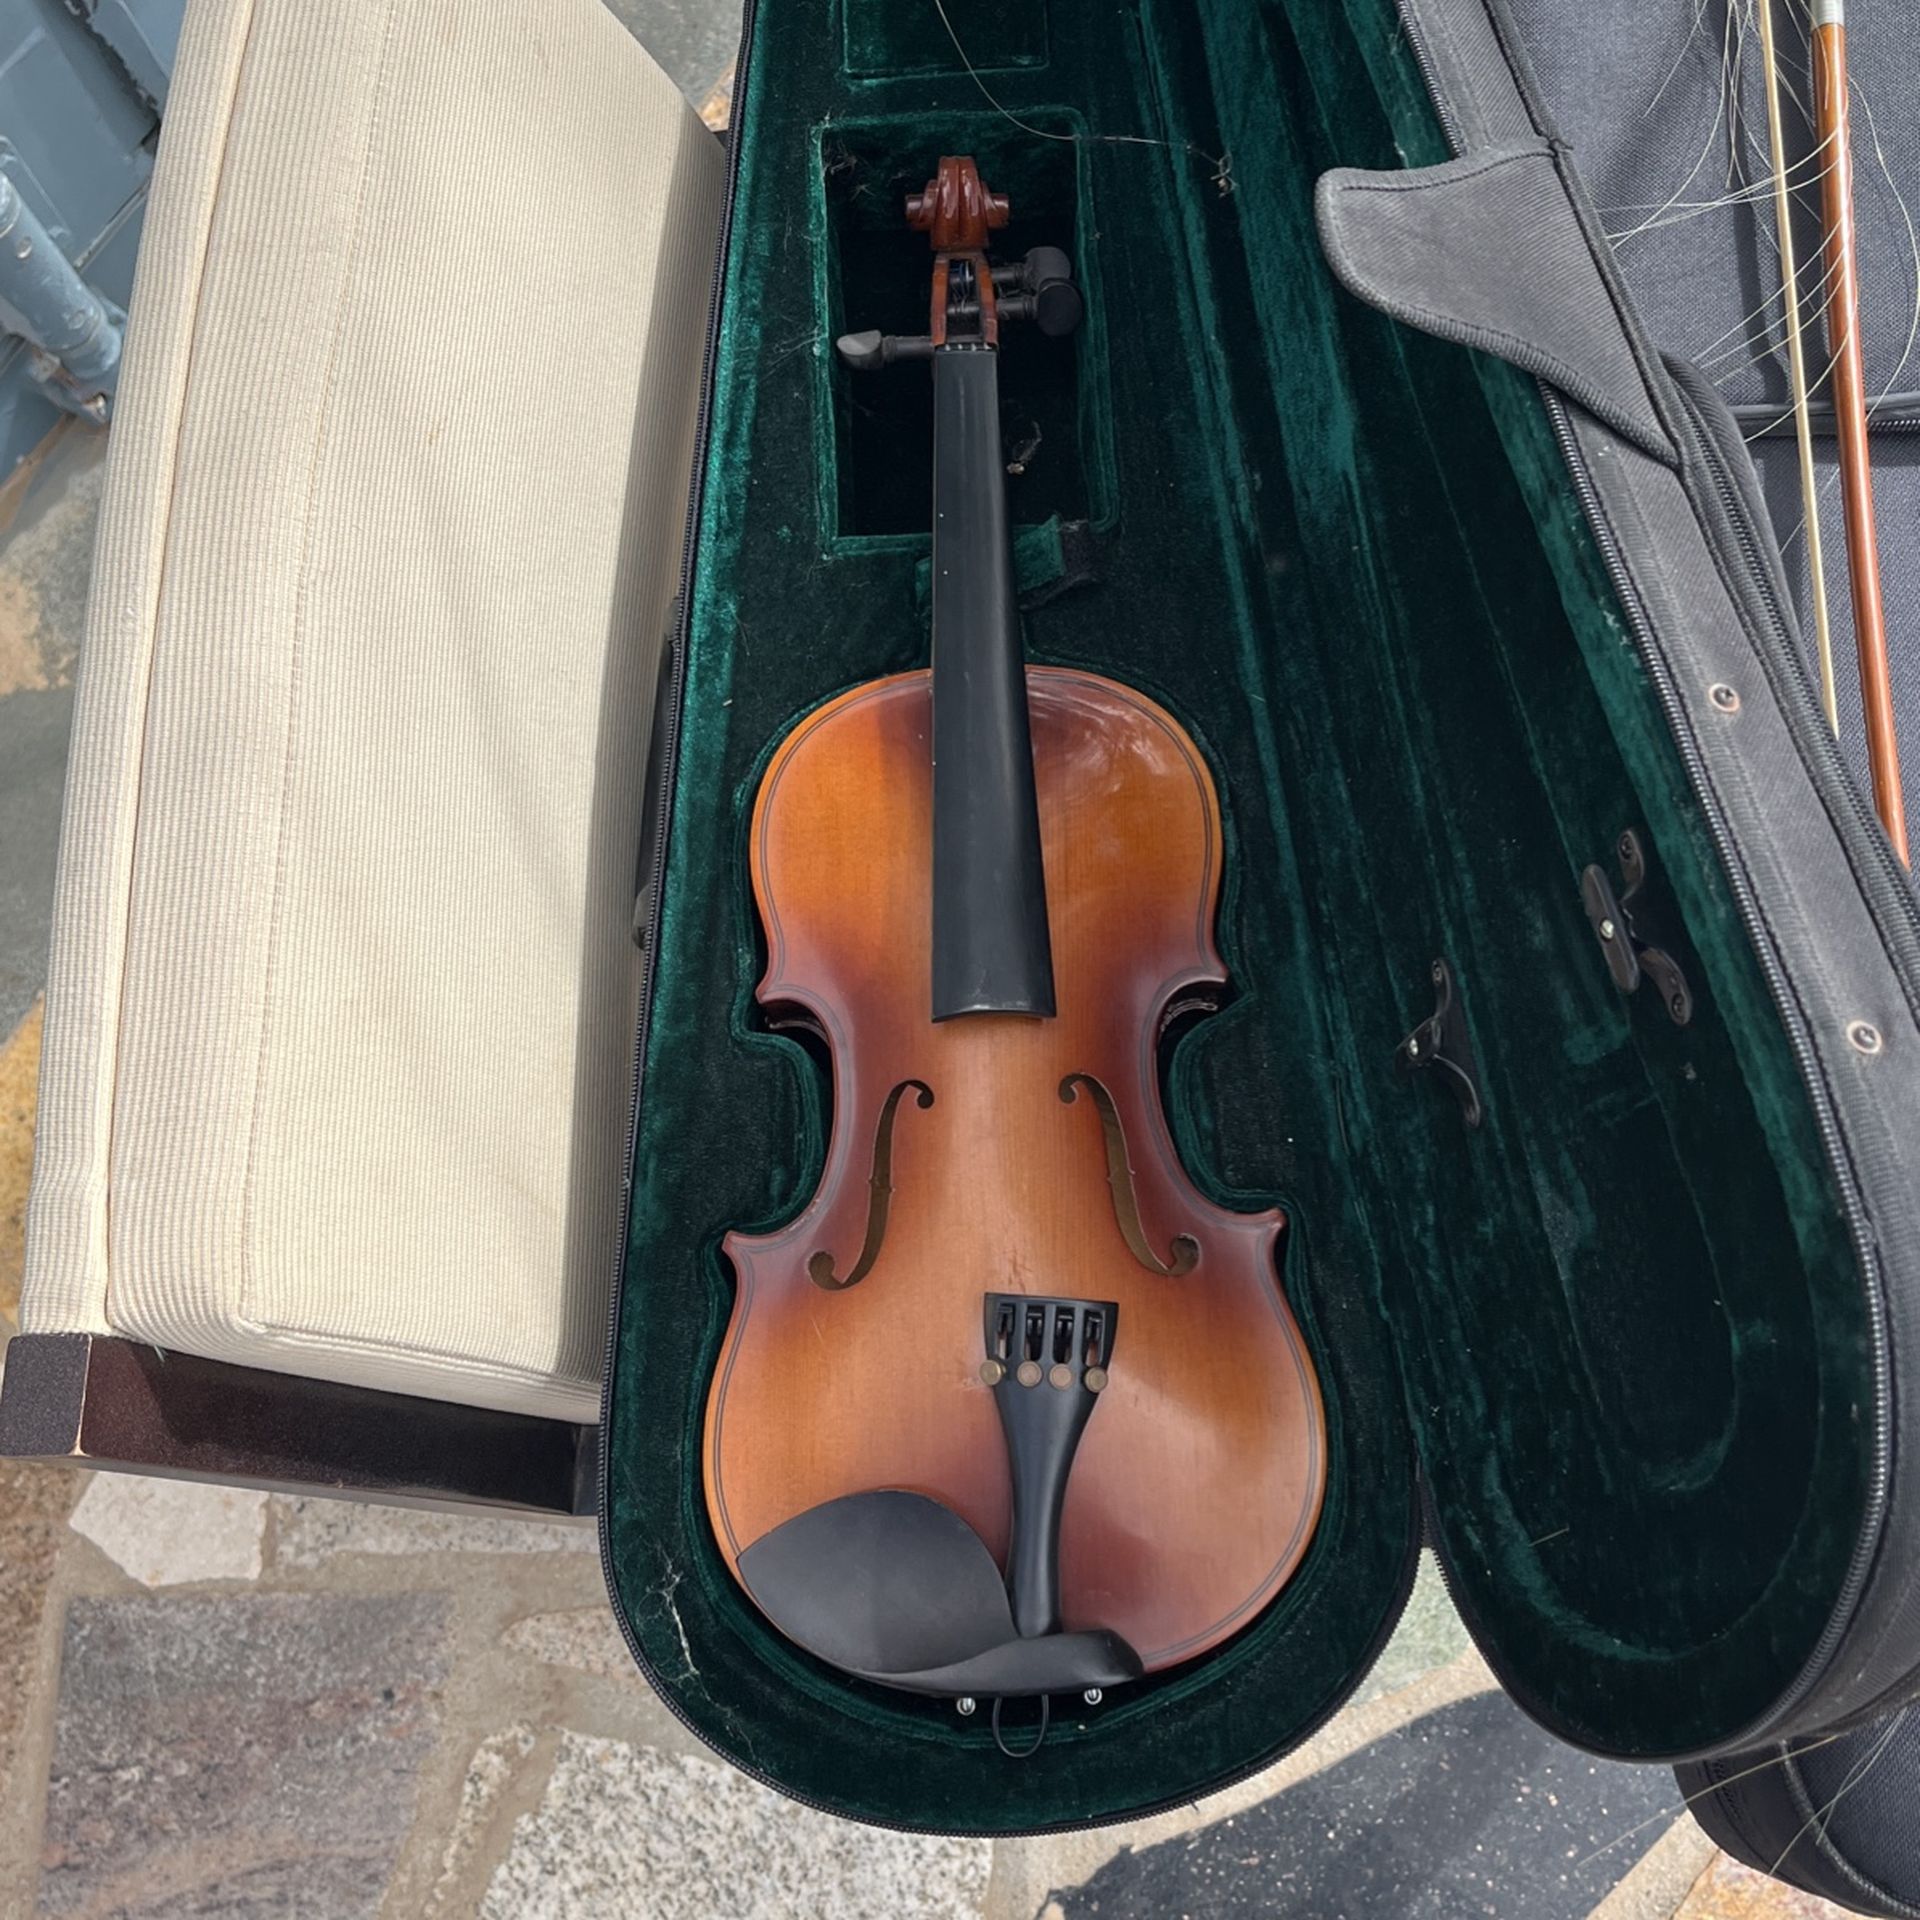 Autonius Stradivarius violin